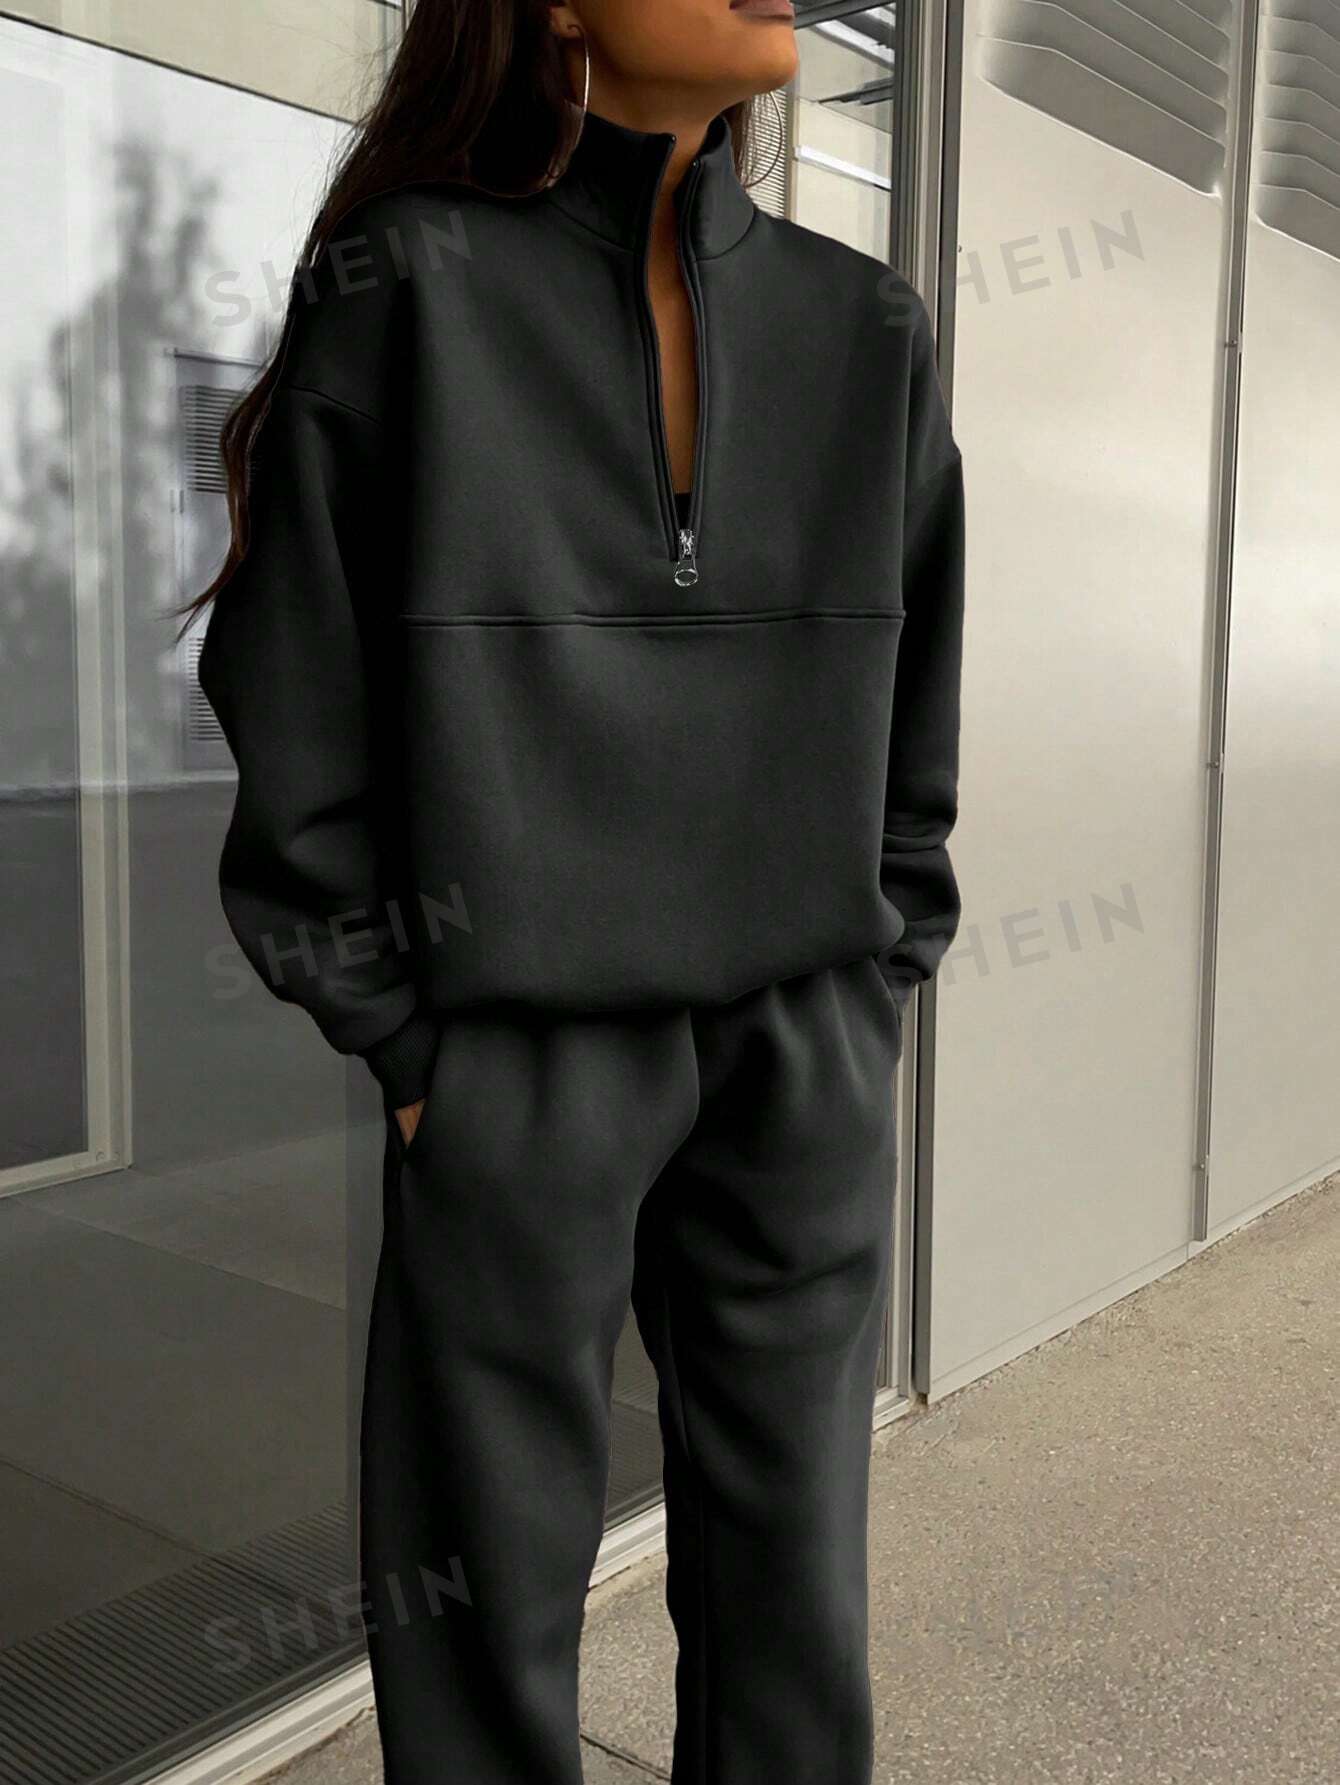 Однотонный топ с длинными рукавами на полумолнии и брюки с манжетами, черный комплект из двух вещей свитшот и джоггеры 1 год 74 см синий